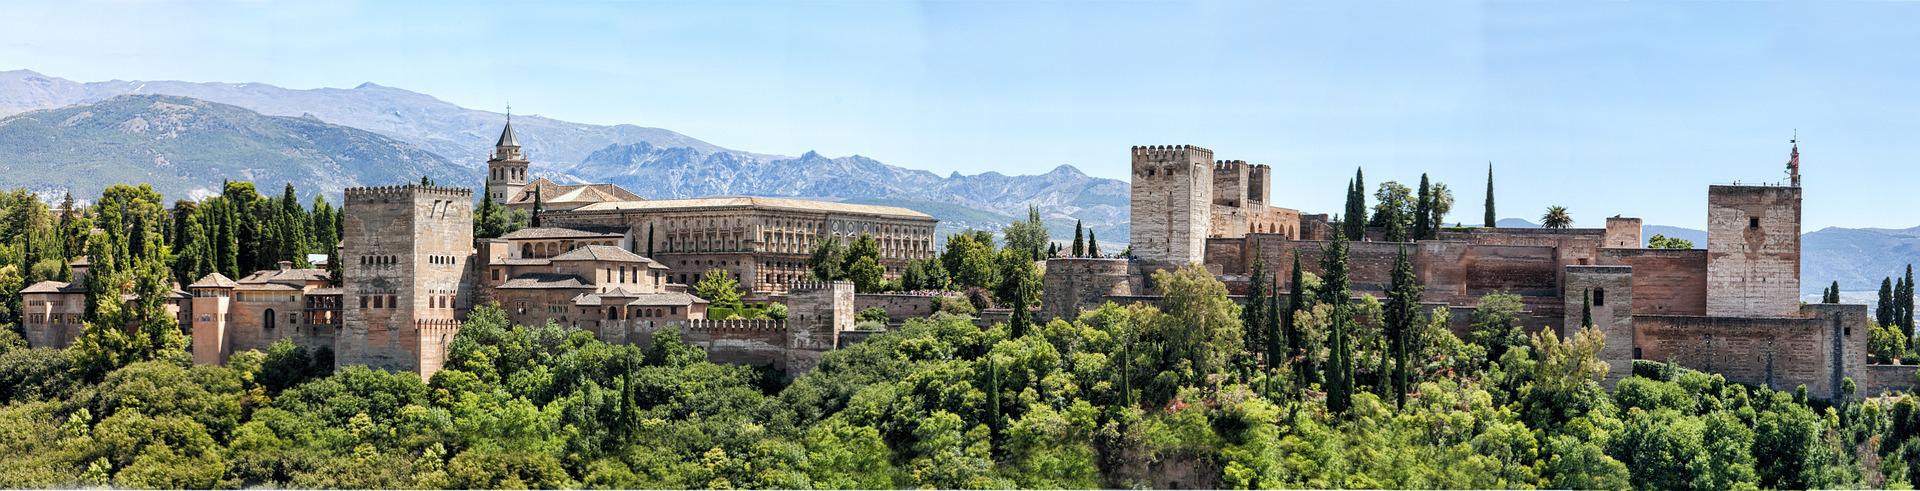 Le palais de alhambra en Andalousie en Espagne